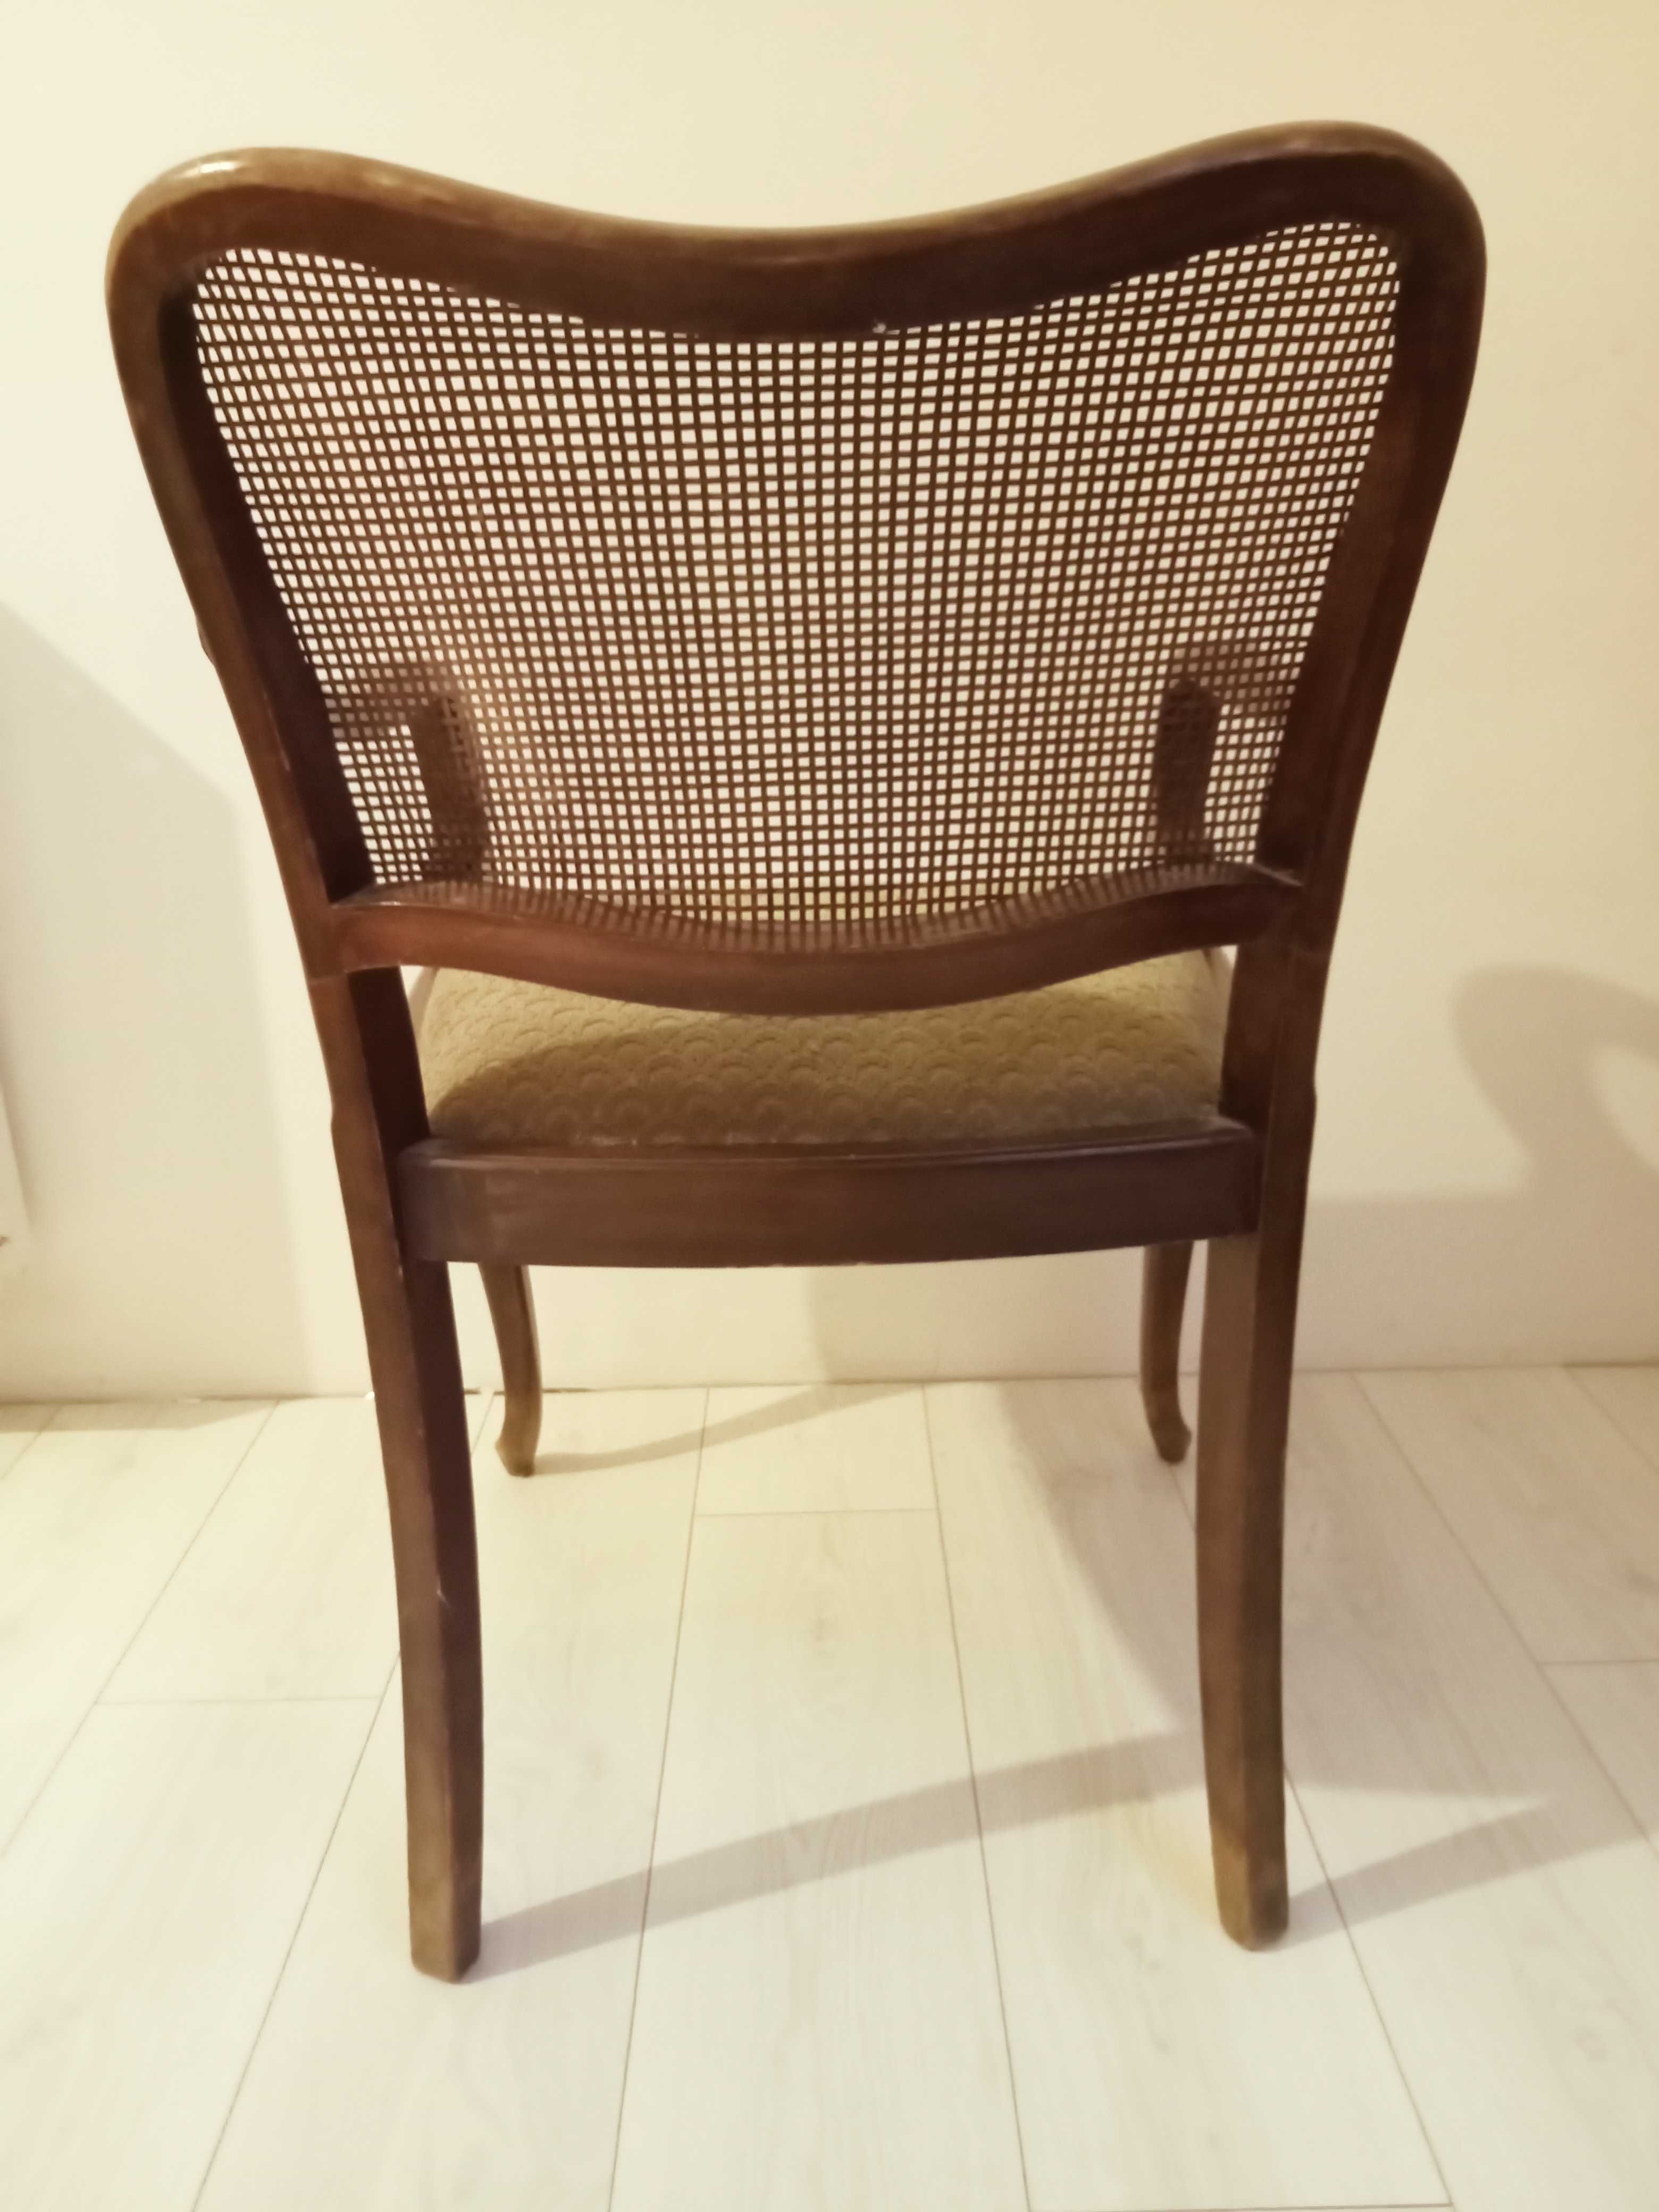 Fotel krzesło z rafią stare